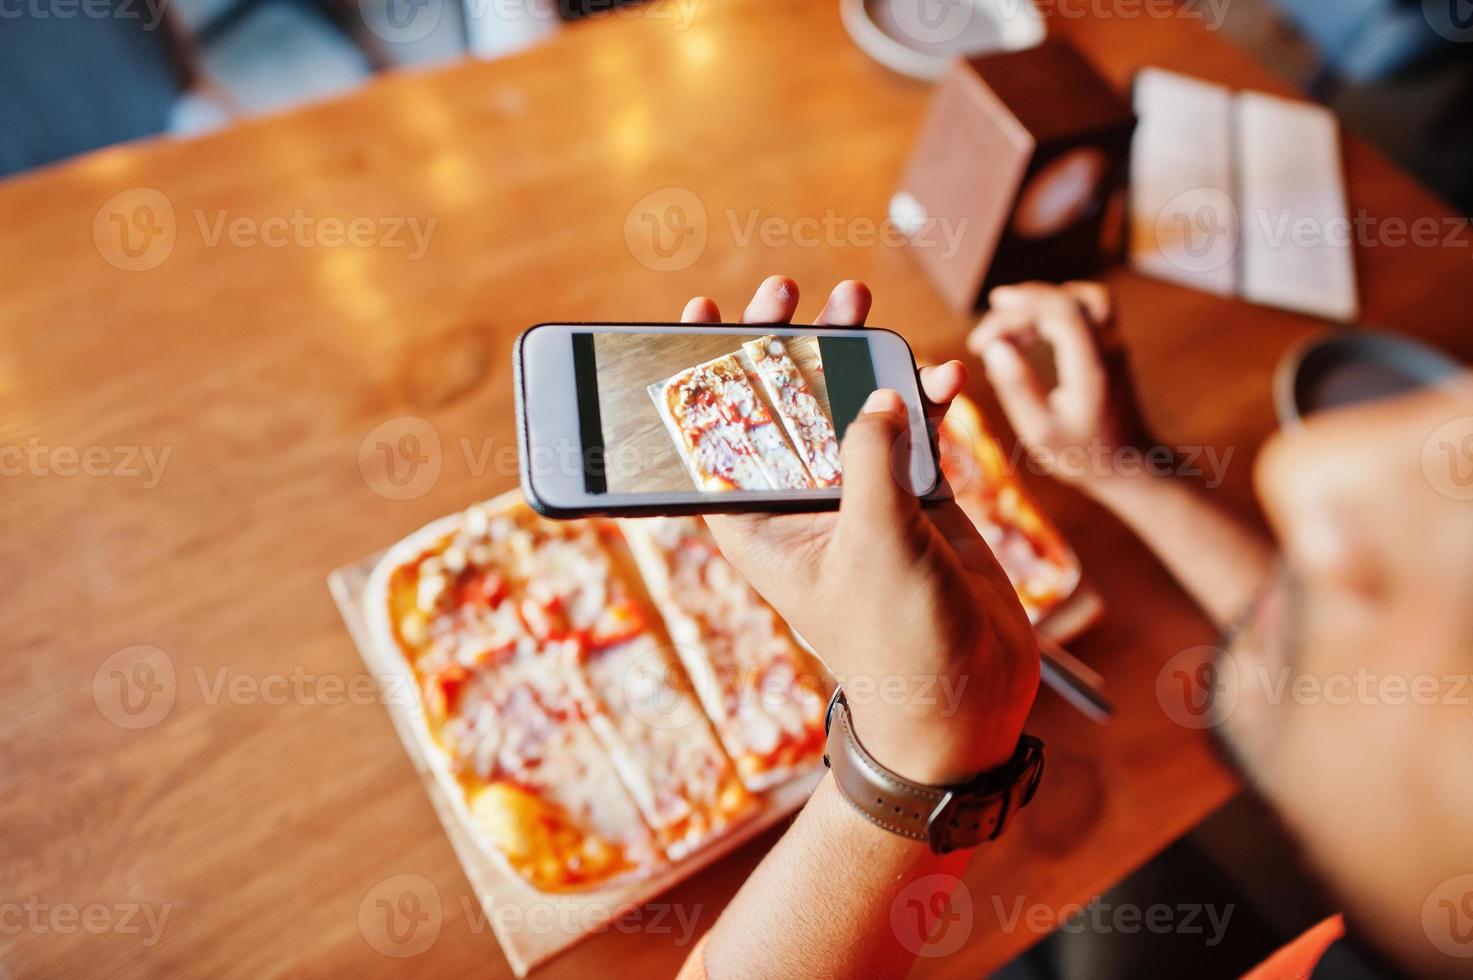 confiante jovem indiano de suéter laranja sentado na pizzaria, come pizza e faz foto em seu telefone.